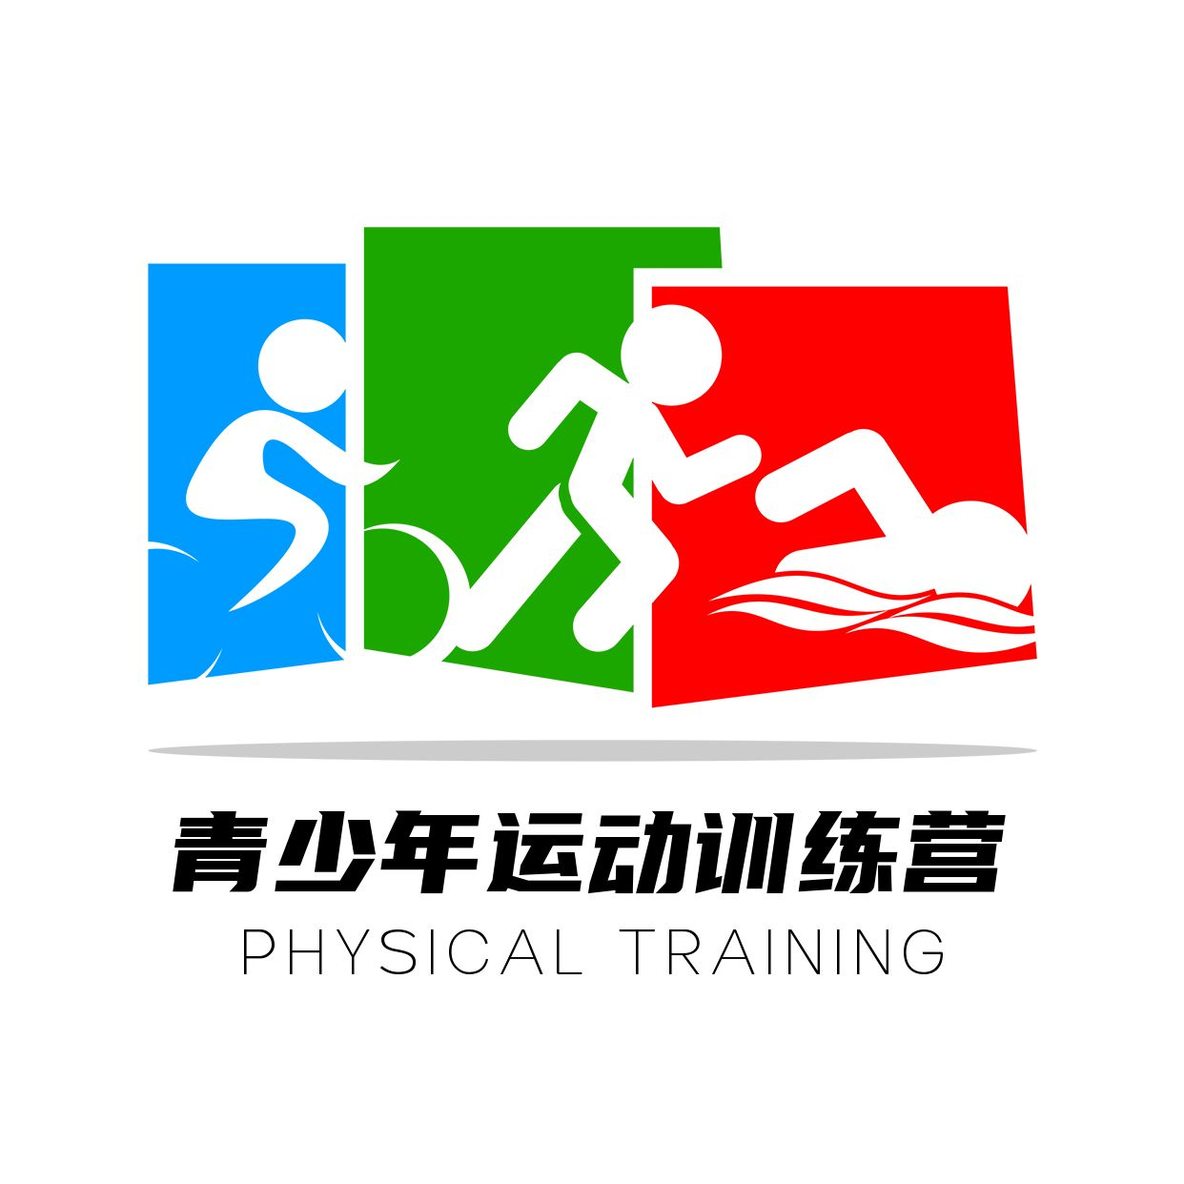 logo铁人三项赛事标志、游泳、跑步和自行车图标